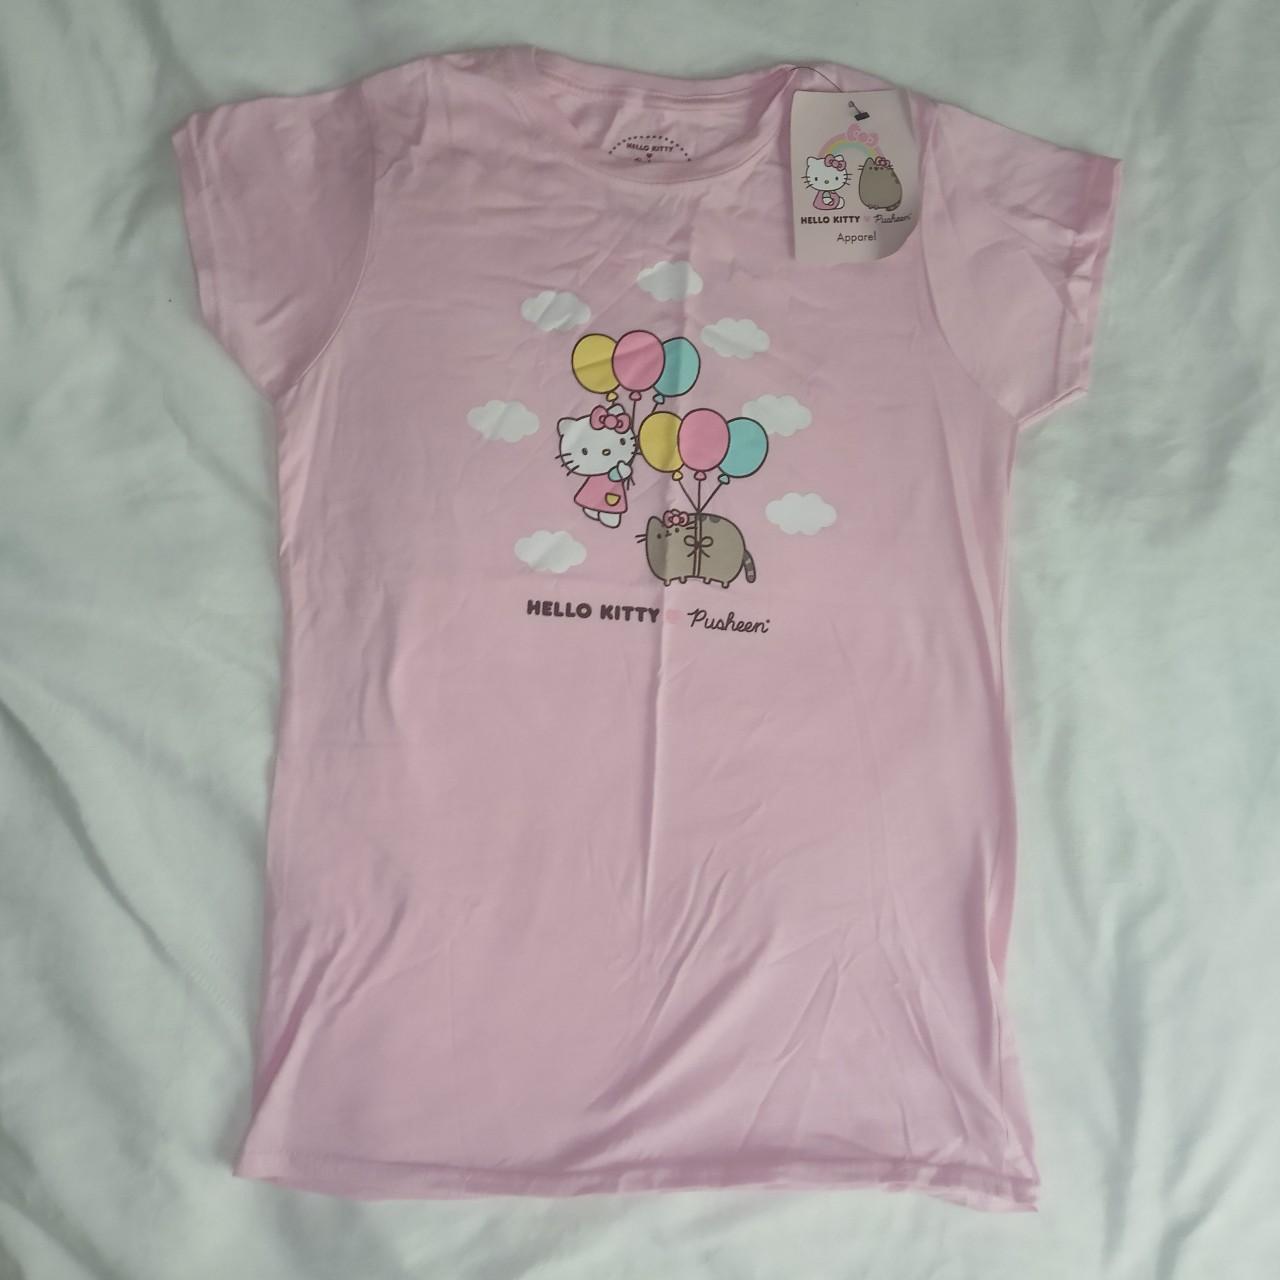 Pusheen X Hello Kitty Pink T-shirt Cutest collab... - Depop